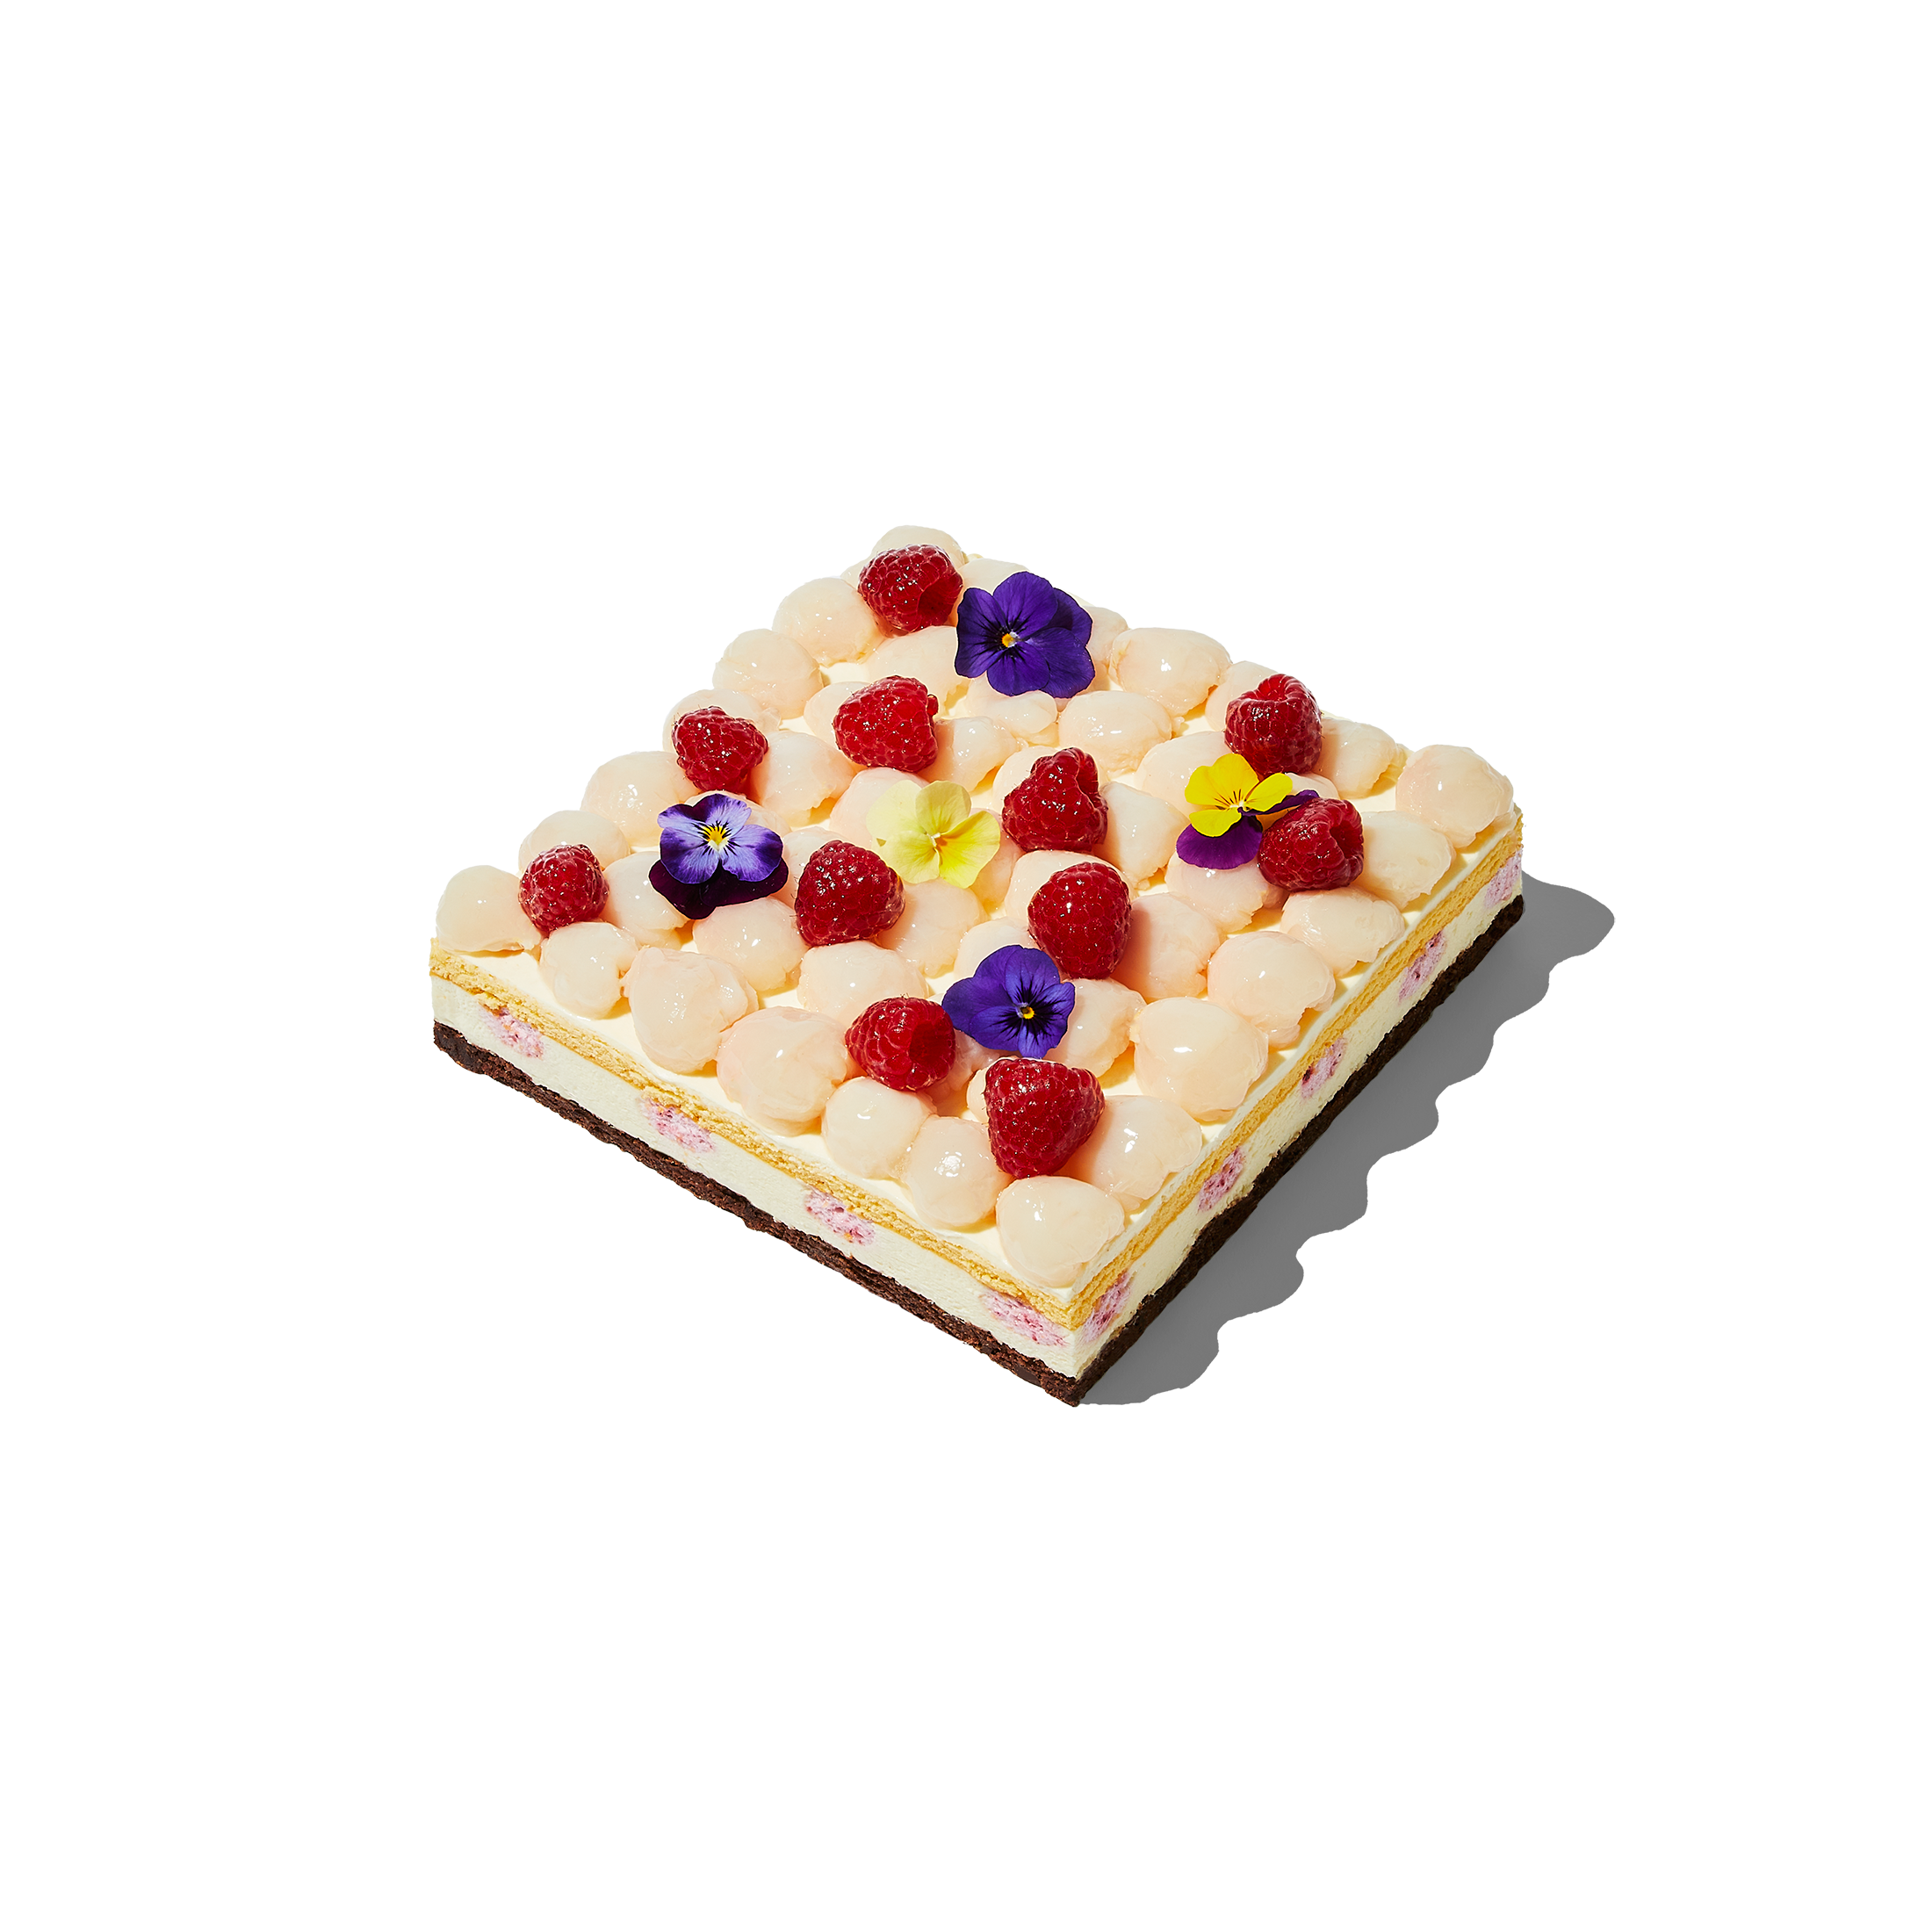 Raspberry Lychee Cake - 30 portion (32x33cm)